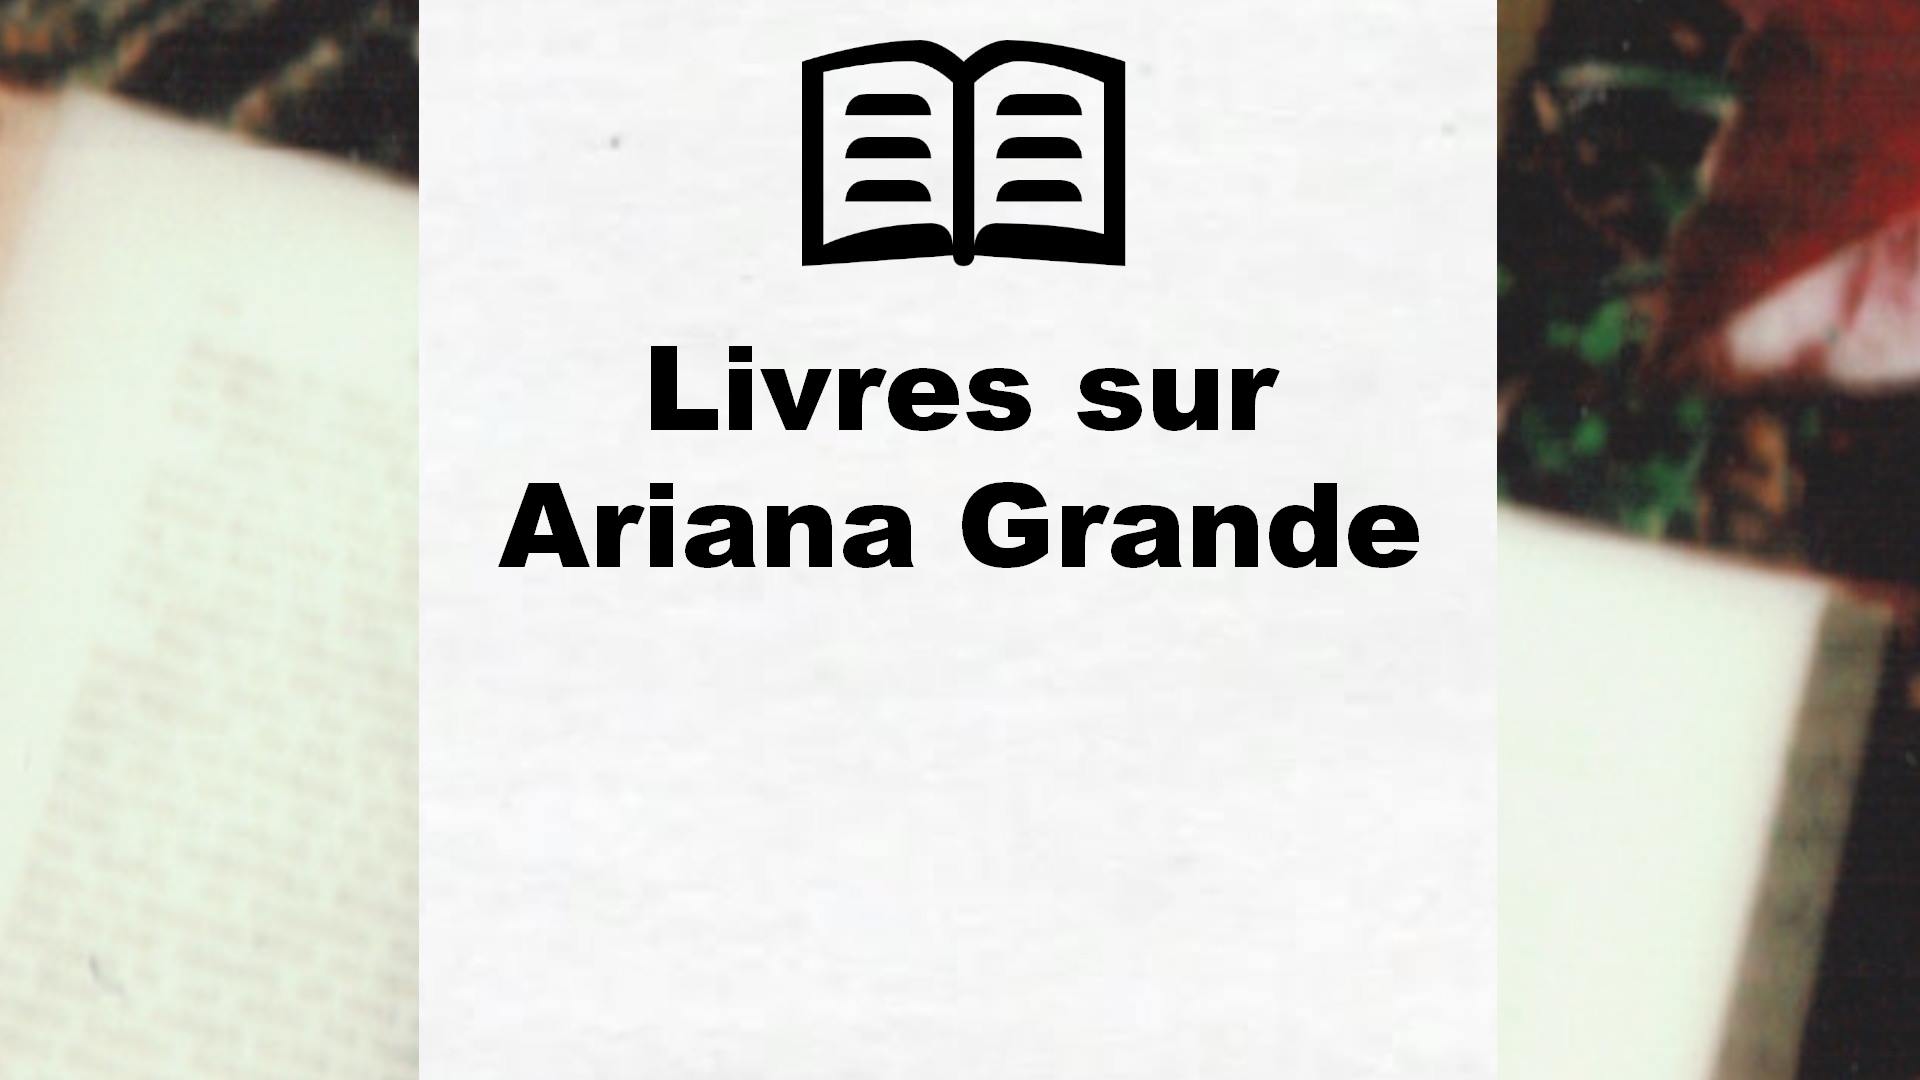 Livres sur Ariana Grande